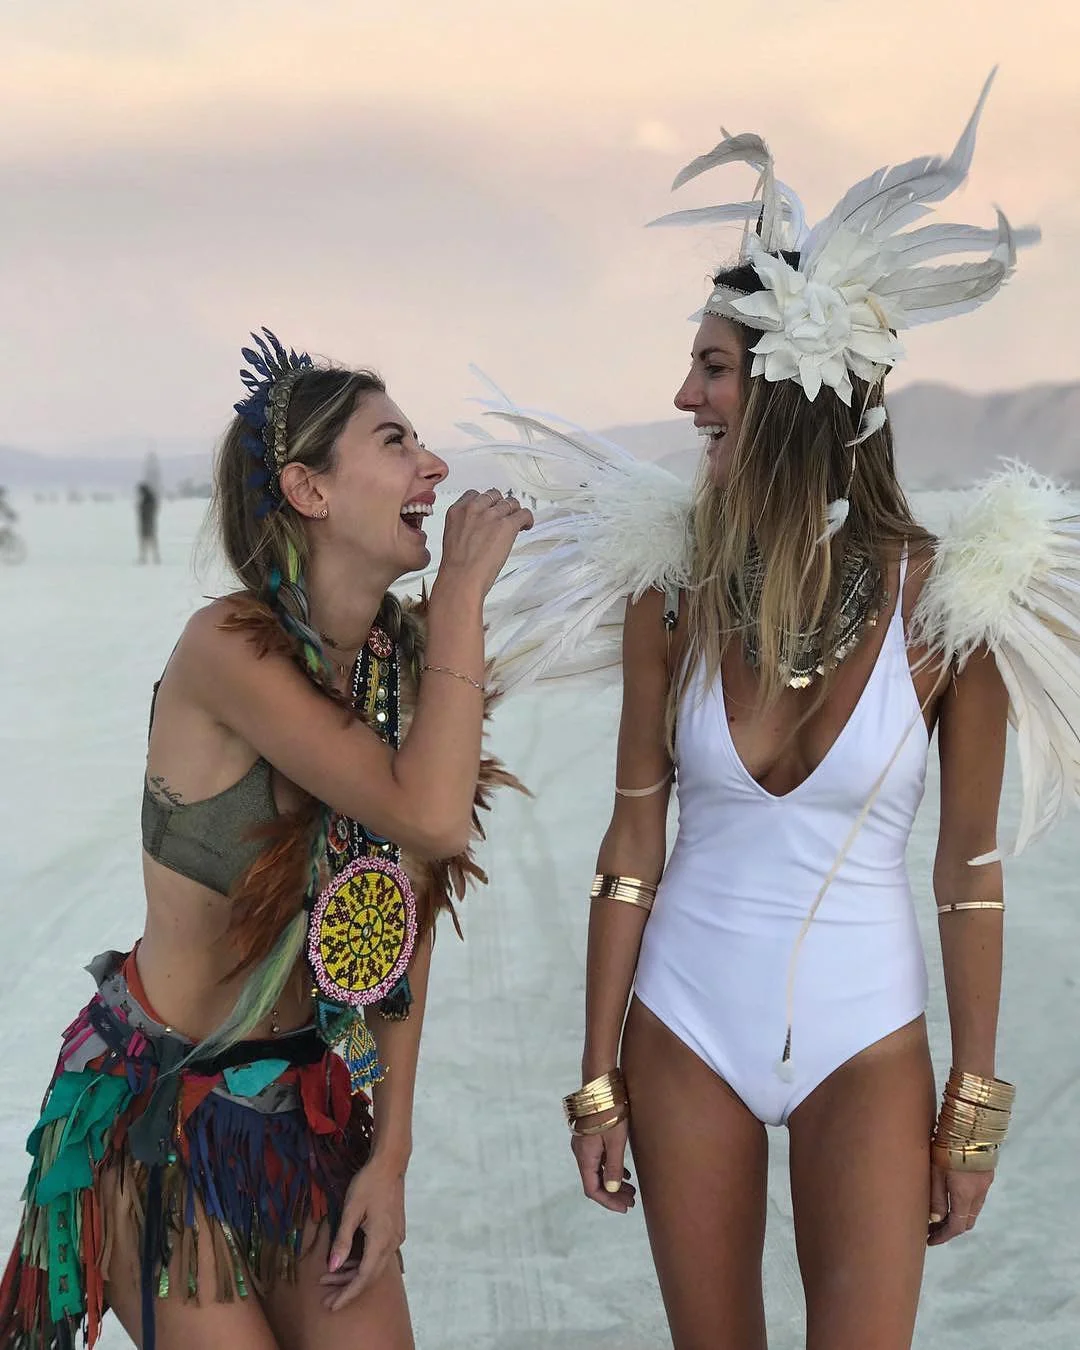 Пыль, голые тела и современное искусство: крутые фото с фестиваля Burning Man 2017 - фото 336433